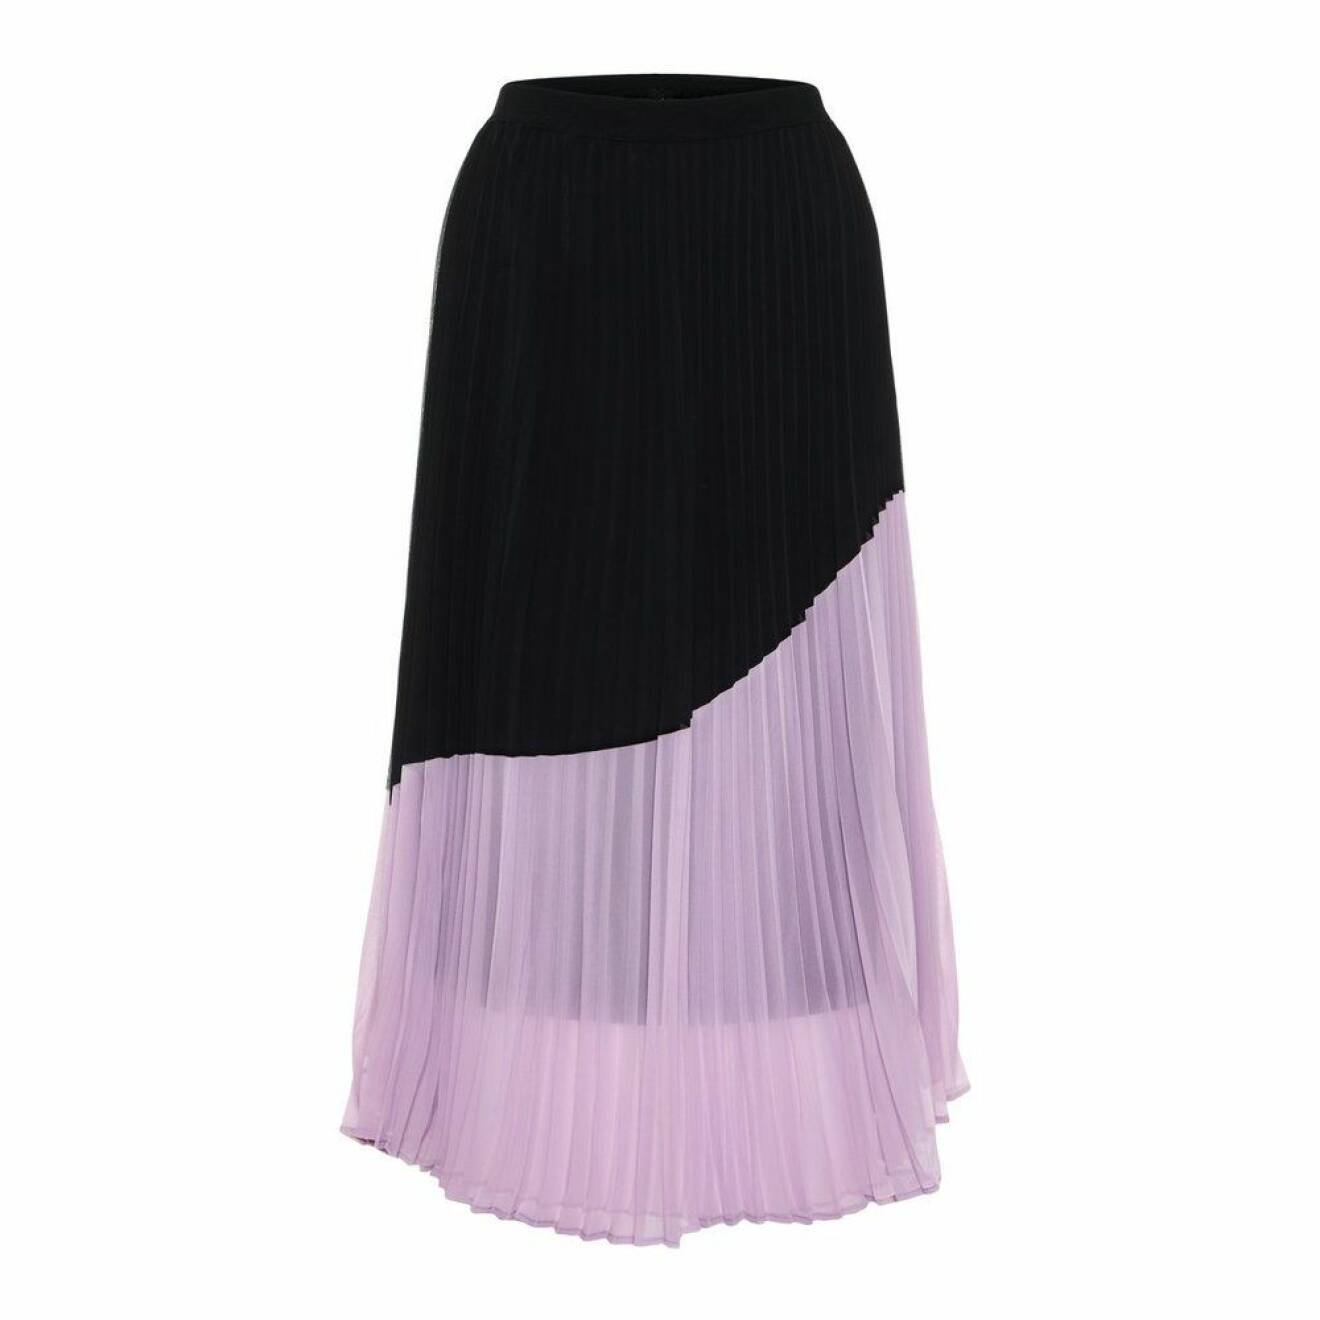 Plisserad kjol i svart och lavendel-lila från Vero Moda.